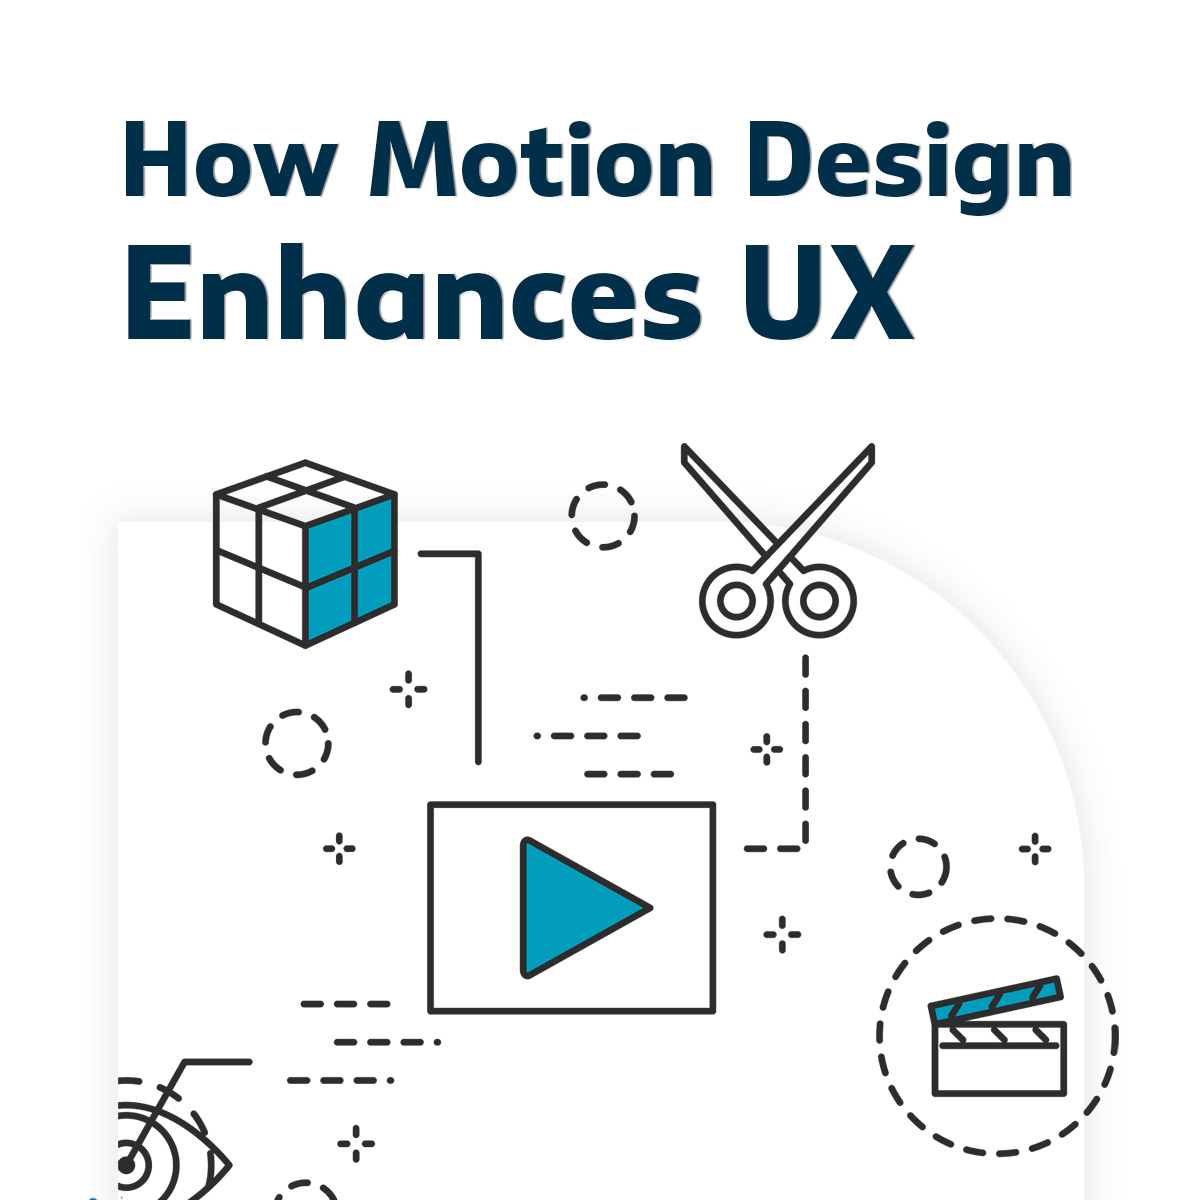 Motion design enhances UX